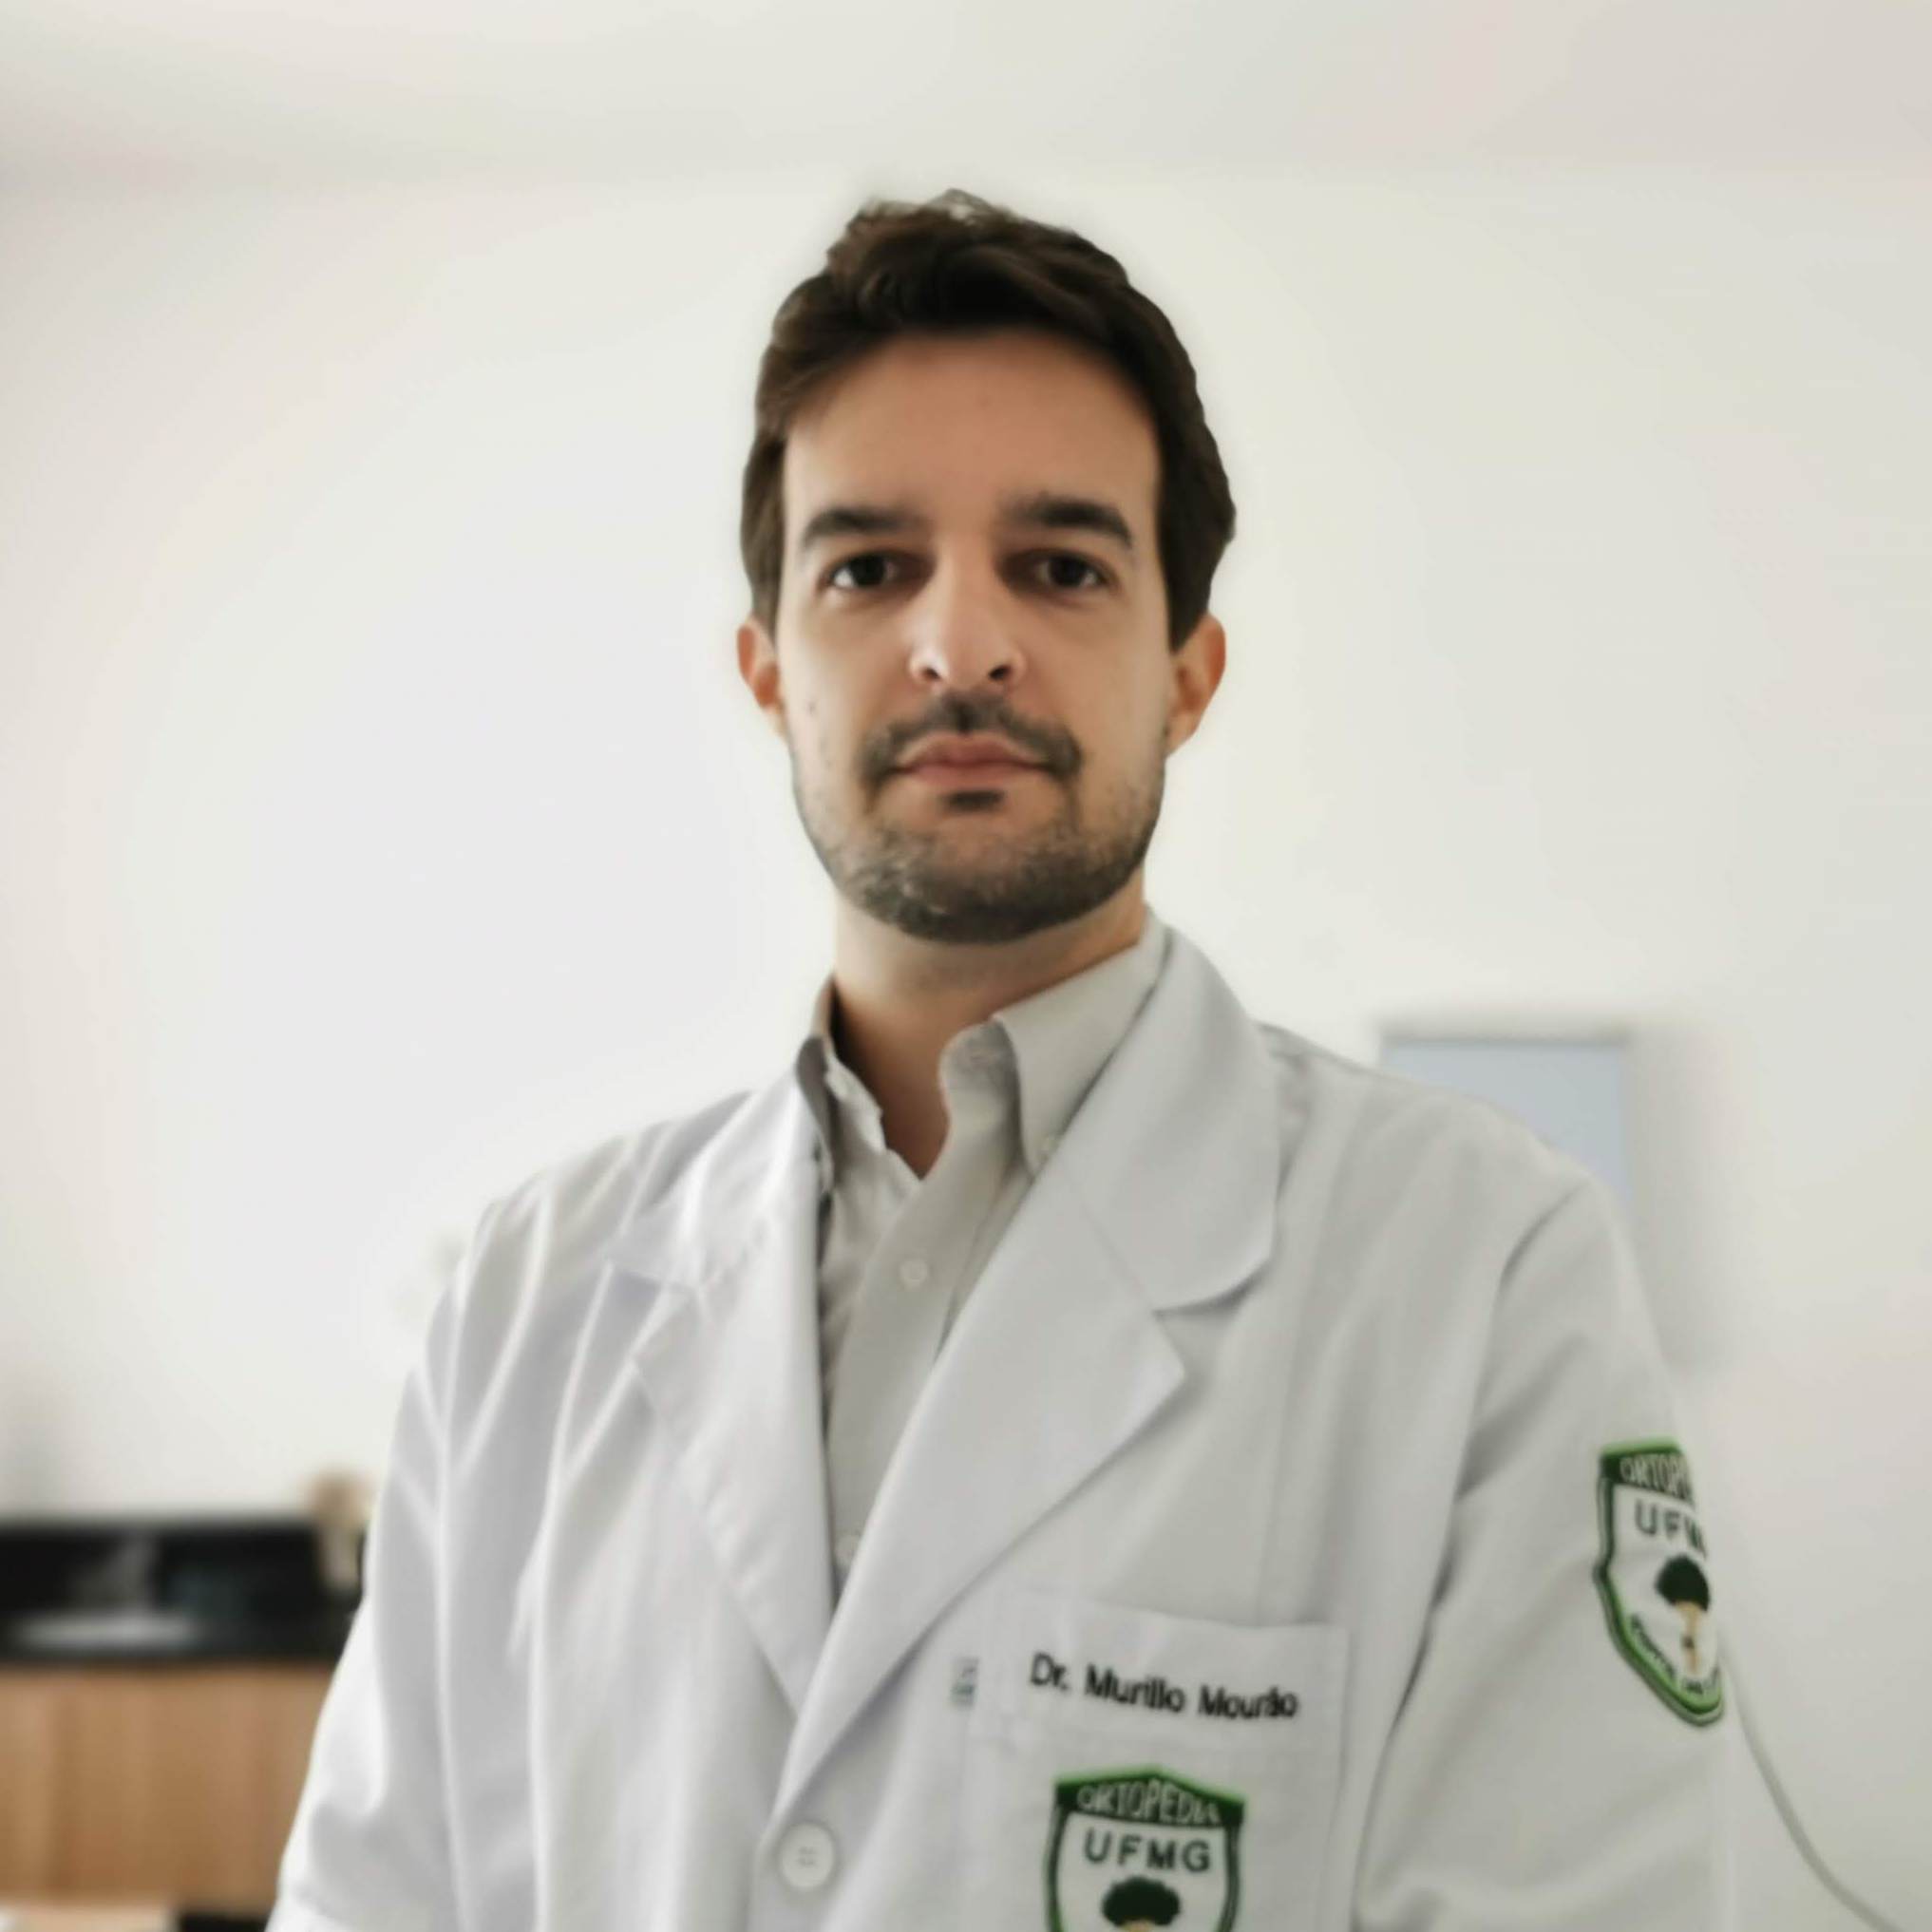 Dr. Murillo Cruz Mouro